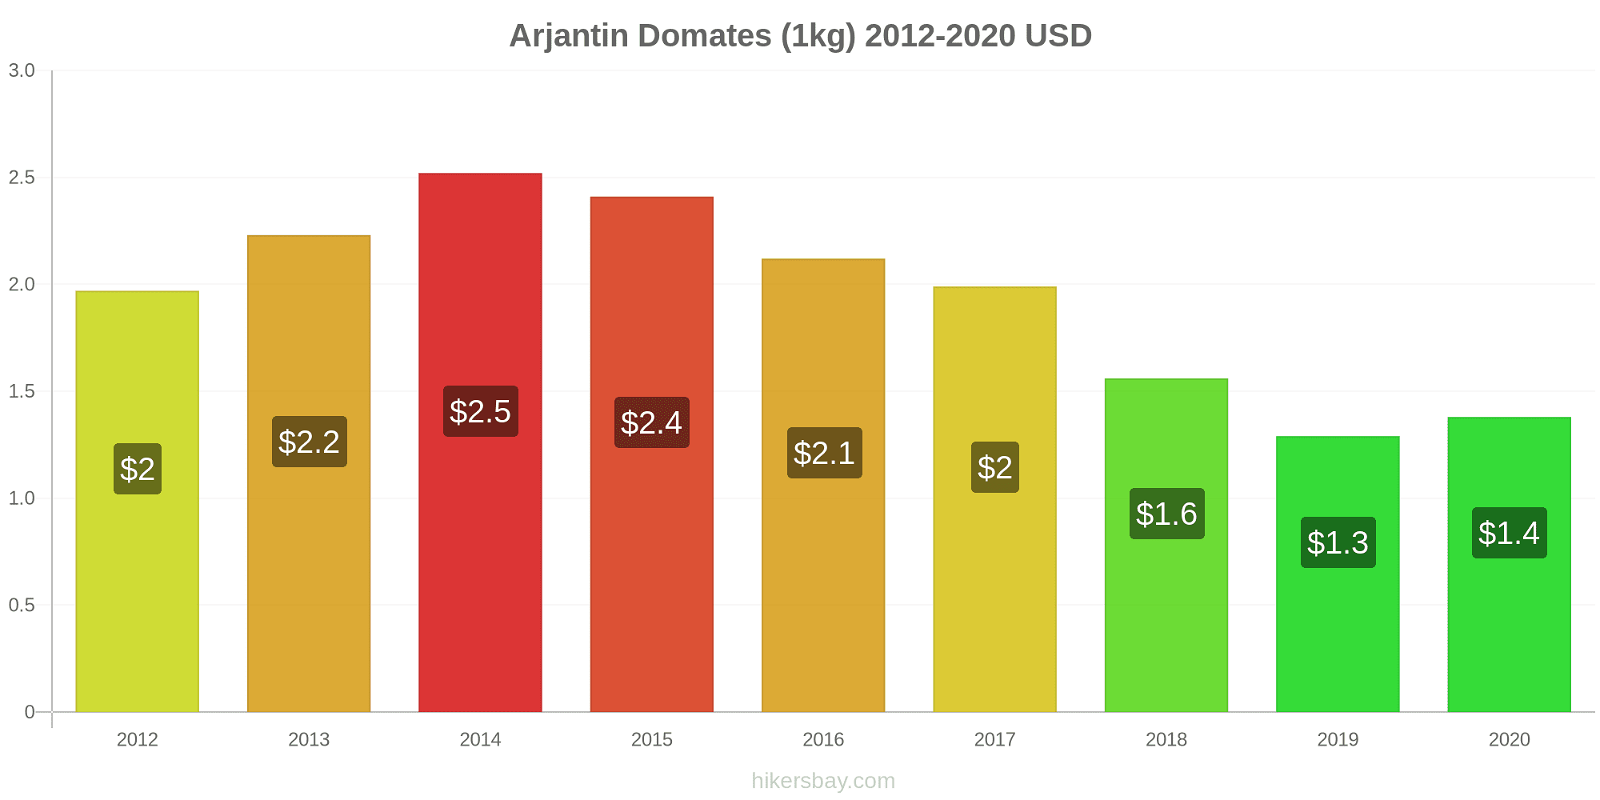 Arjantin fiyat değişiklikleri Domates (1kg) hikersbay.com